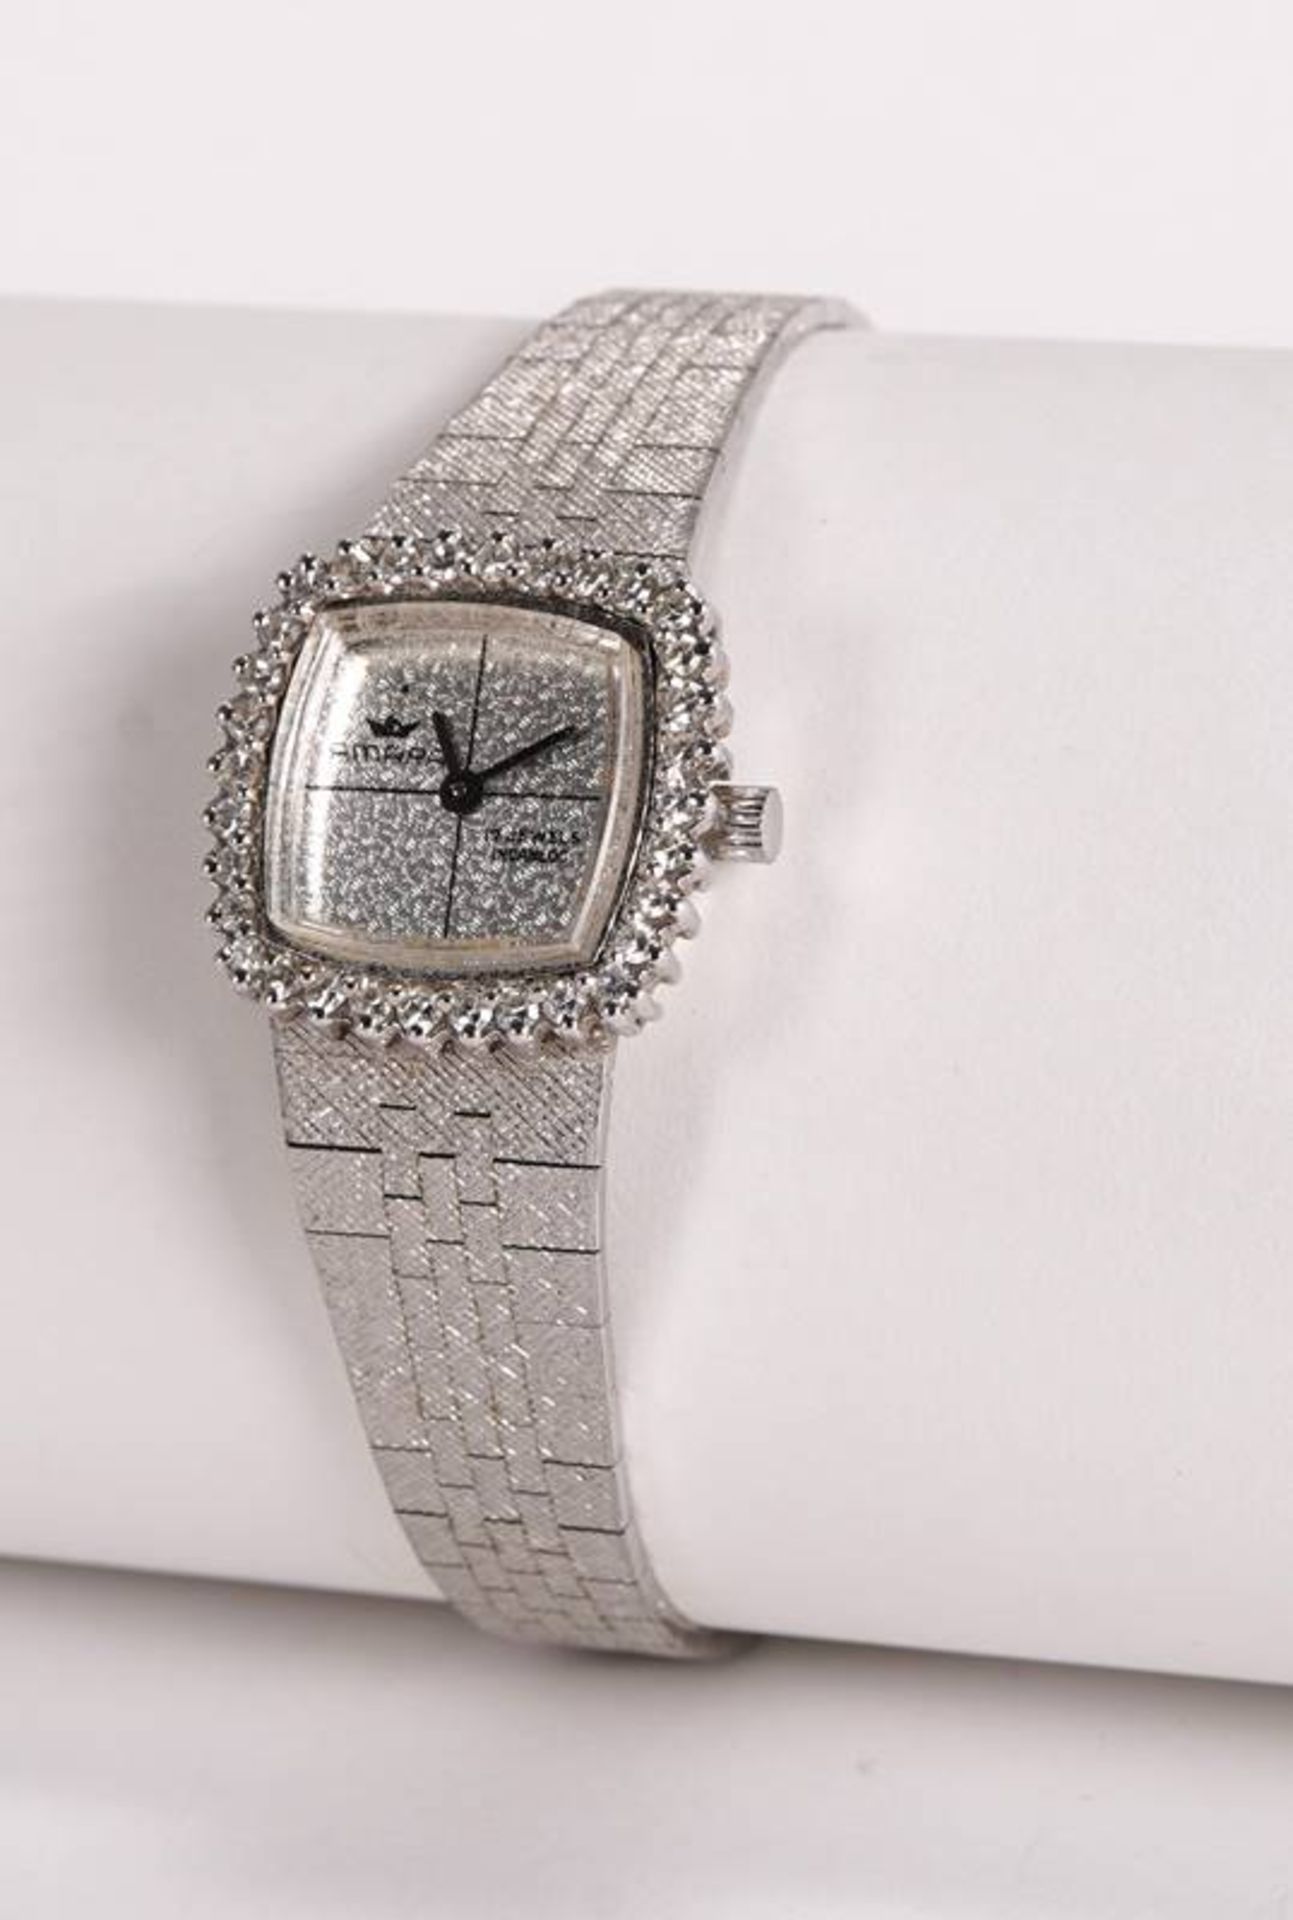 Extravagant vintage ladies' watch